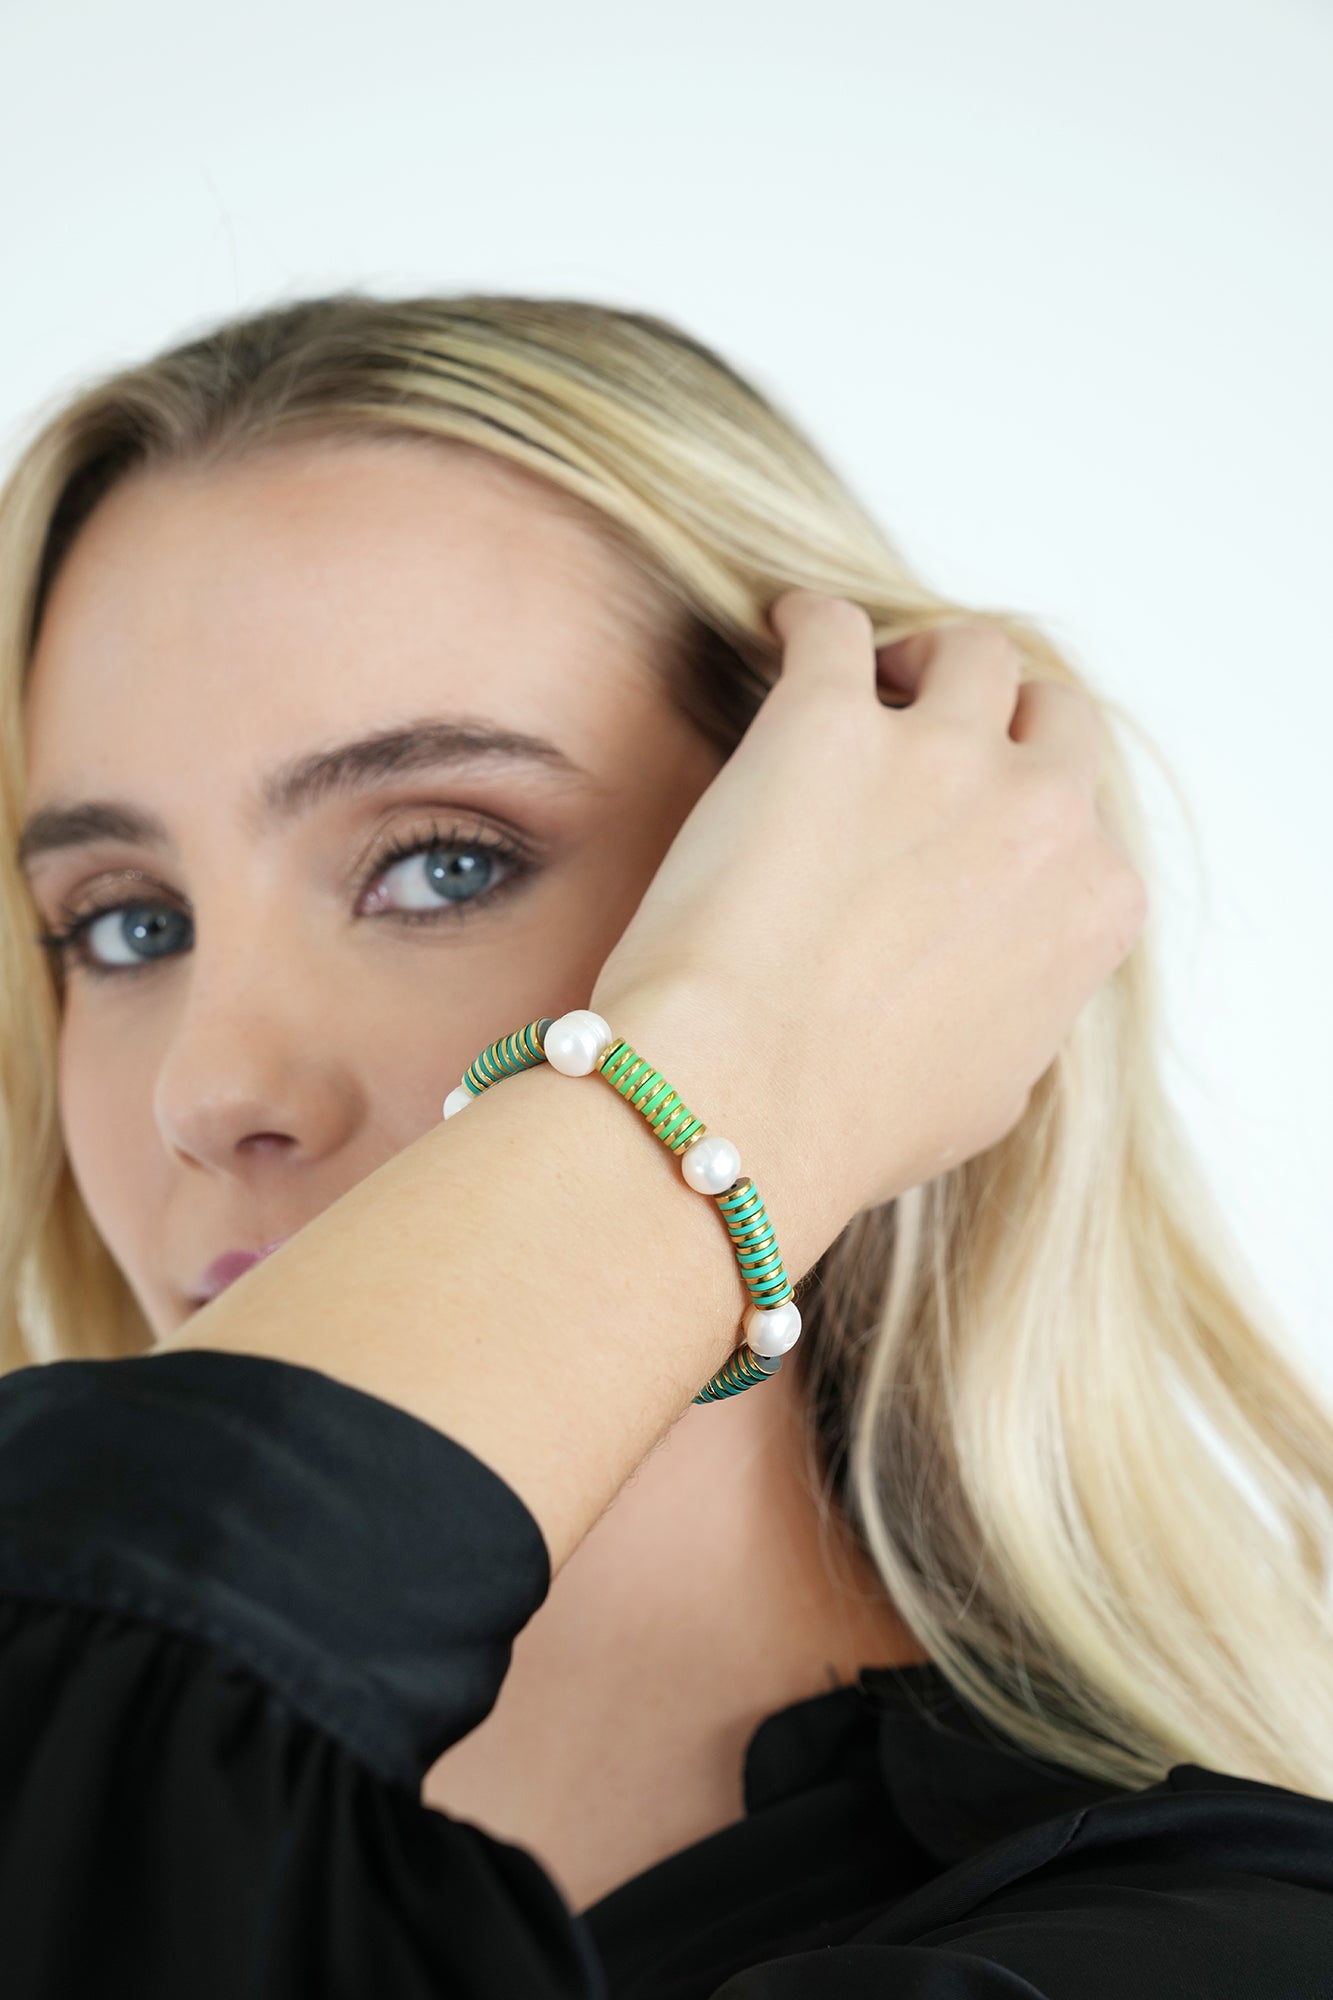 Green Pearl Bracelet